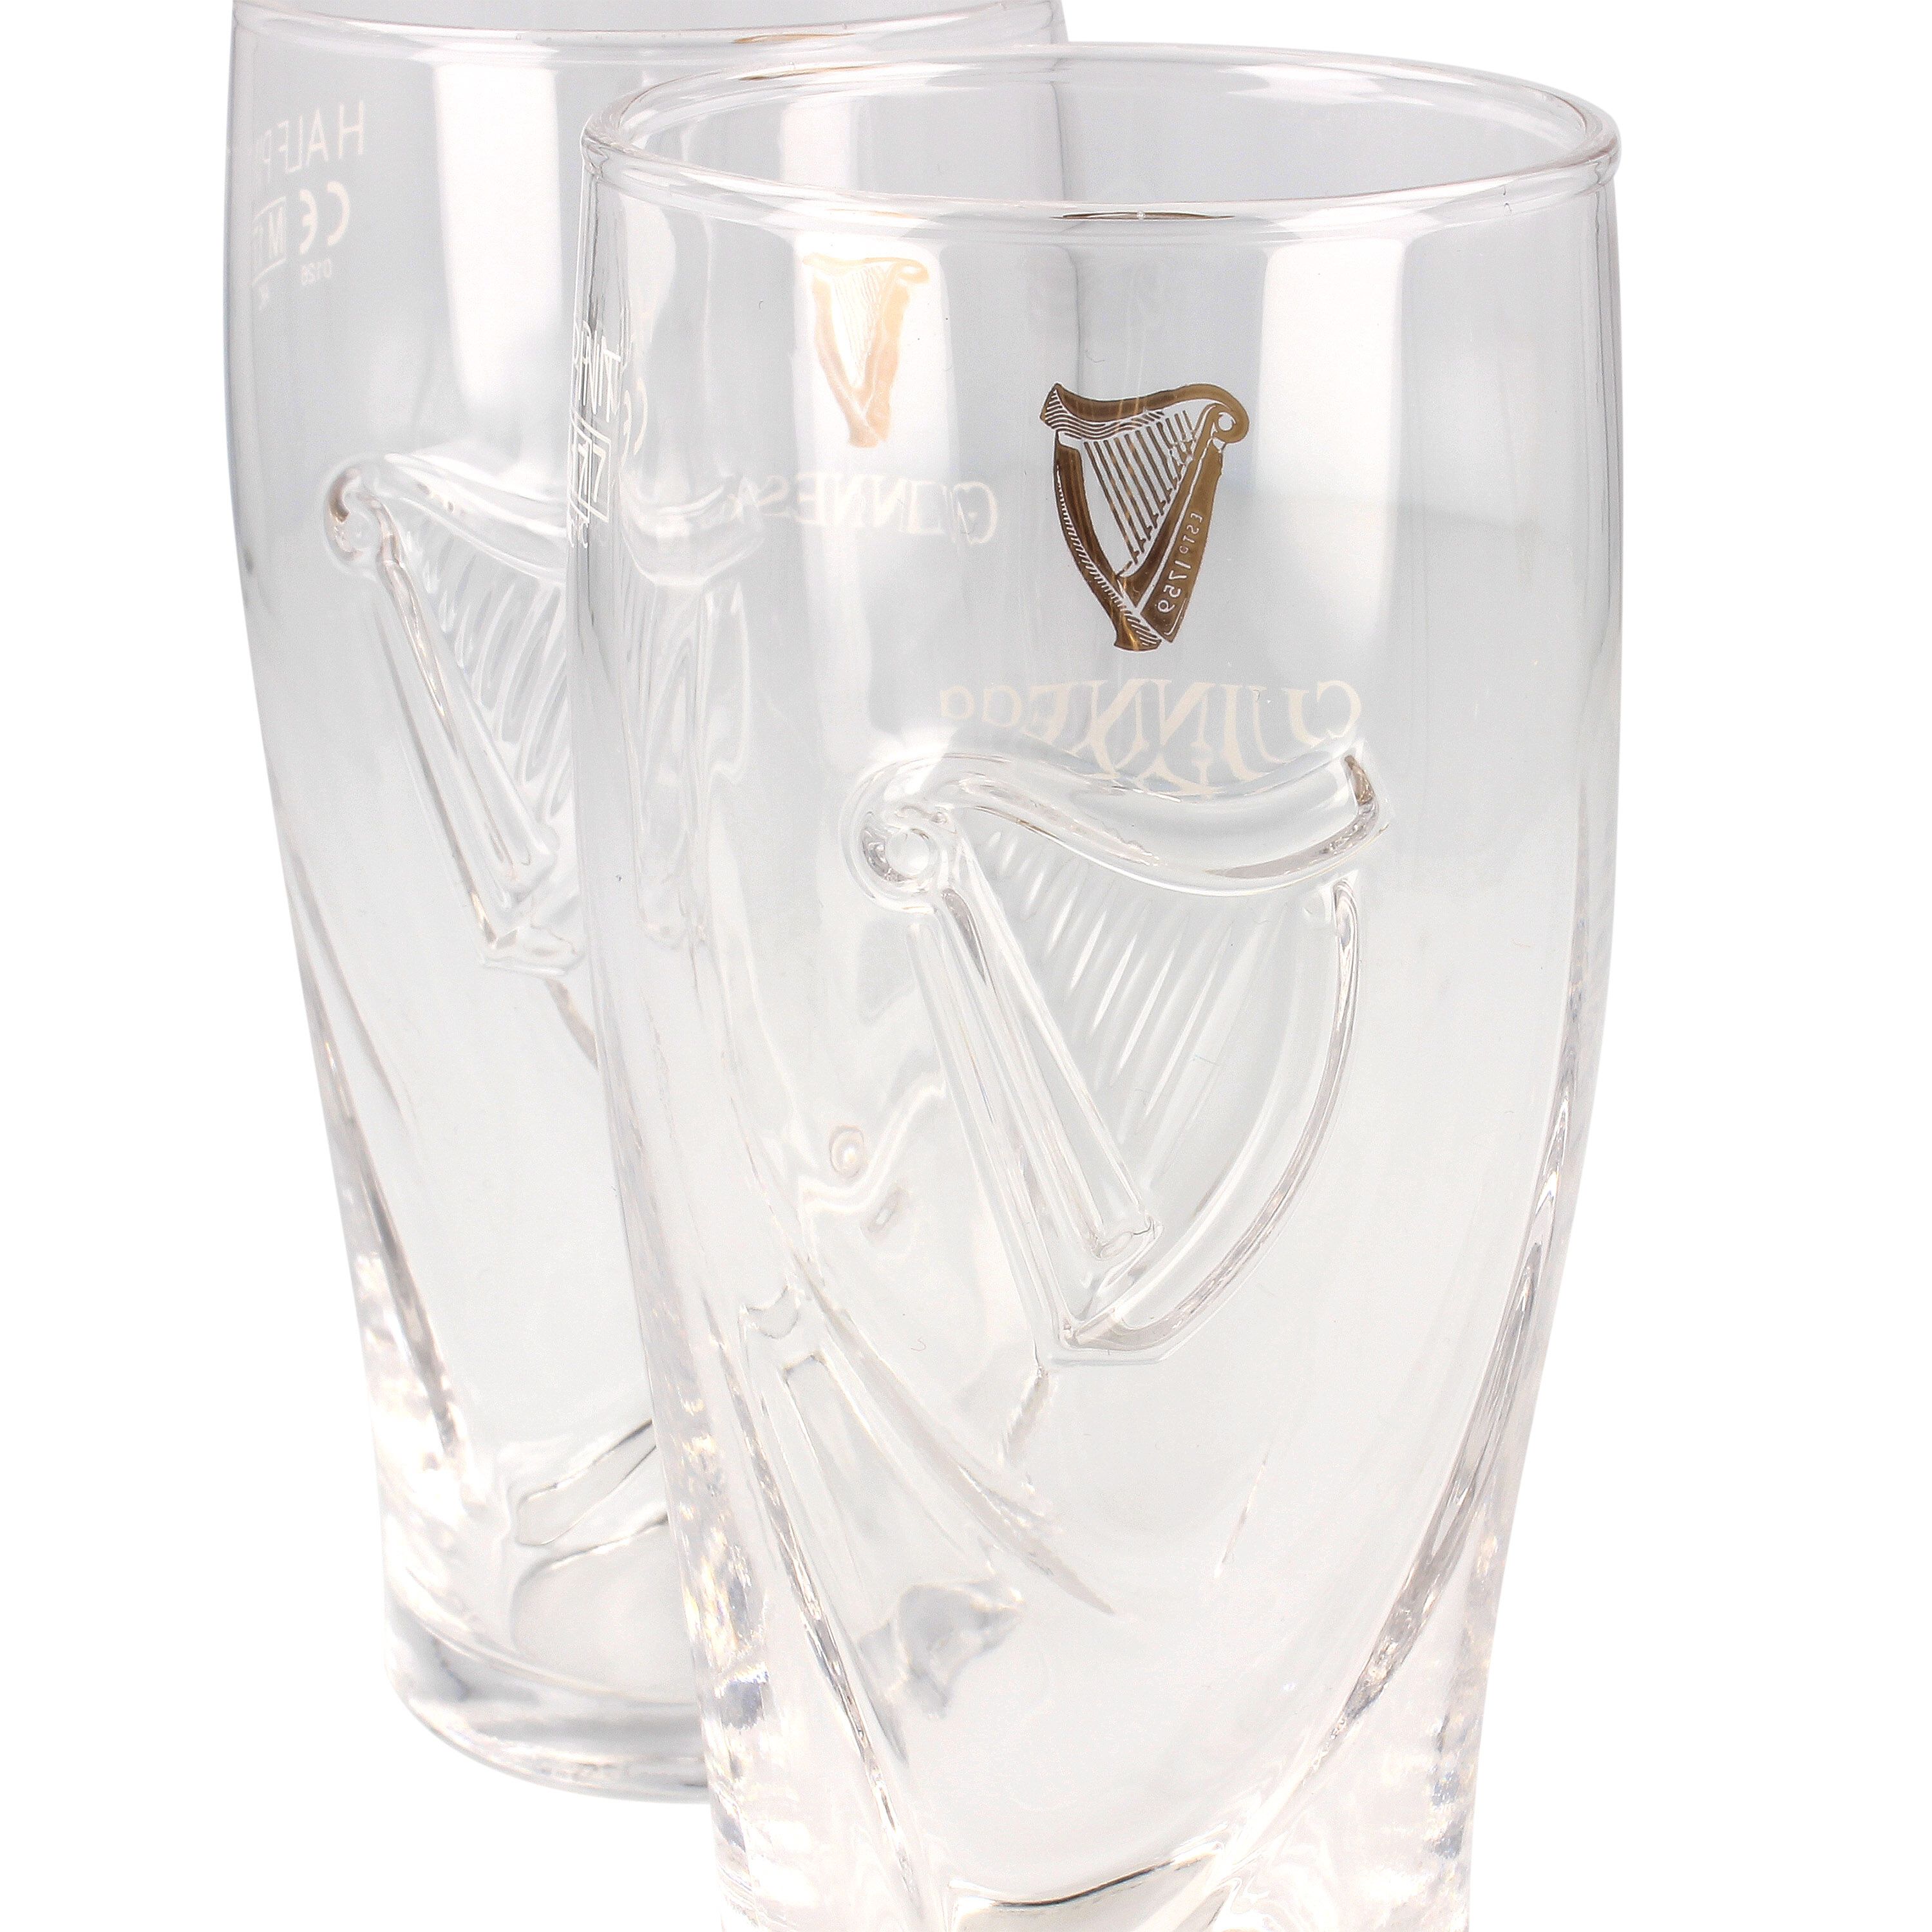 GUINNESS BREWED IN DUBLIN EMBOSSED HARP 16oz SET OF 4pcs BEER GLASSES NEW 